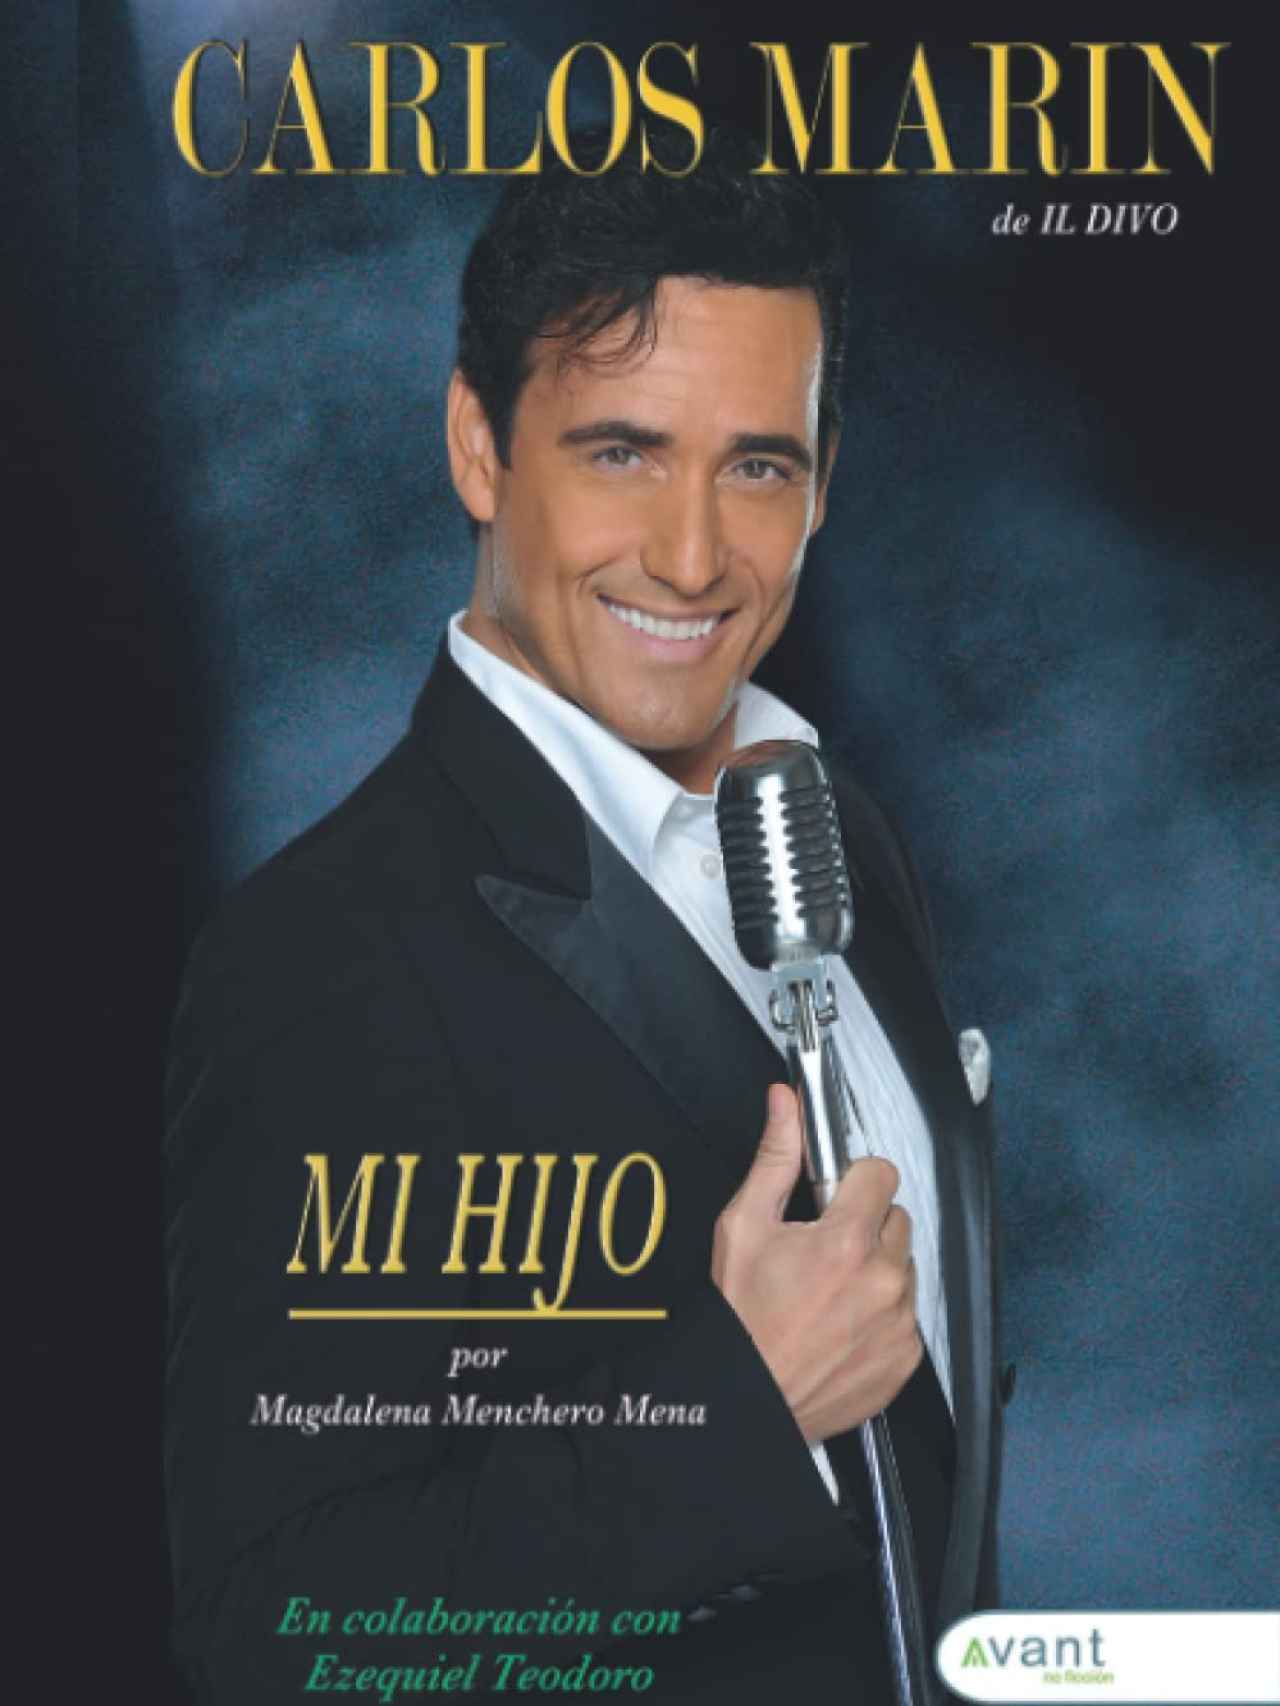 La portada del libro en memoria de Carlos Marín.